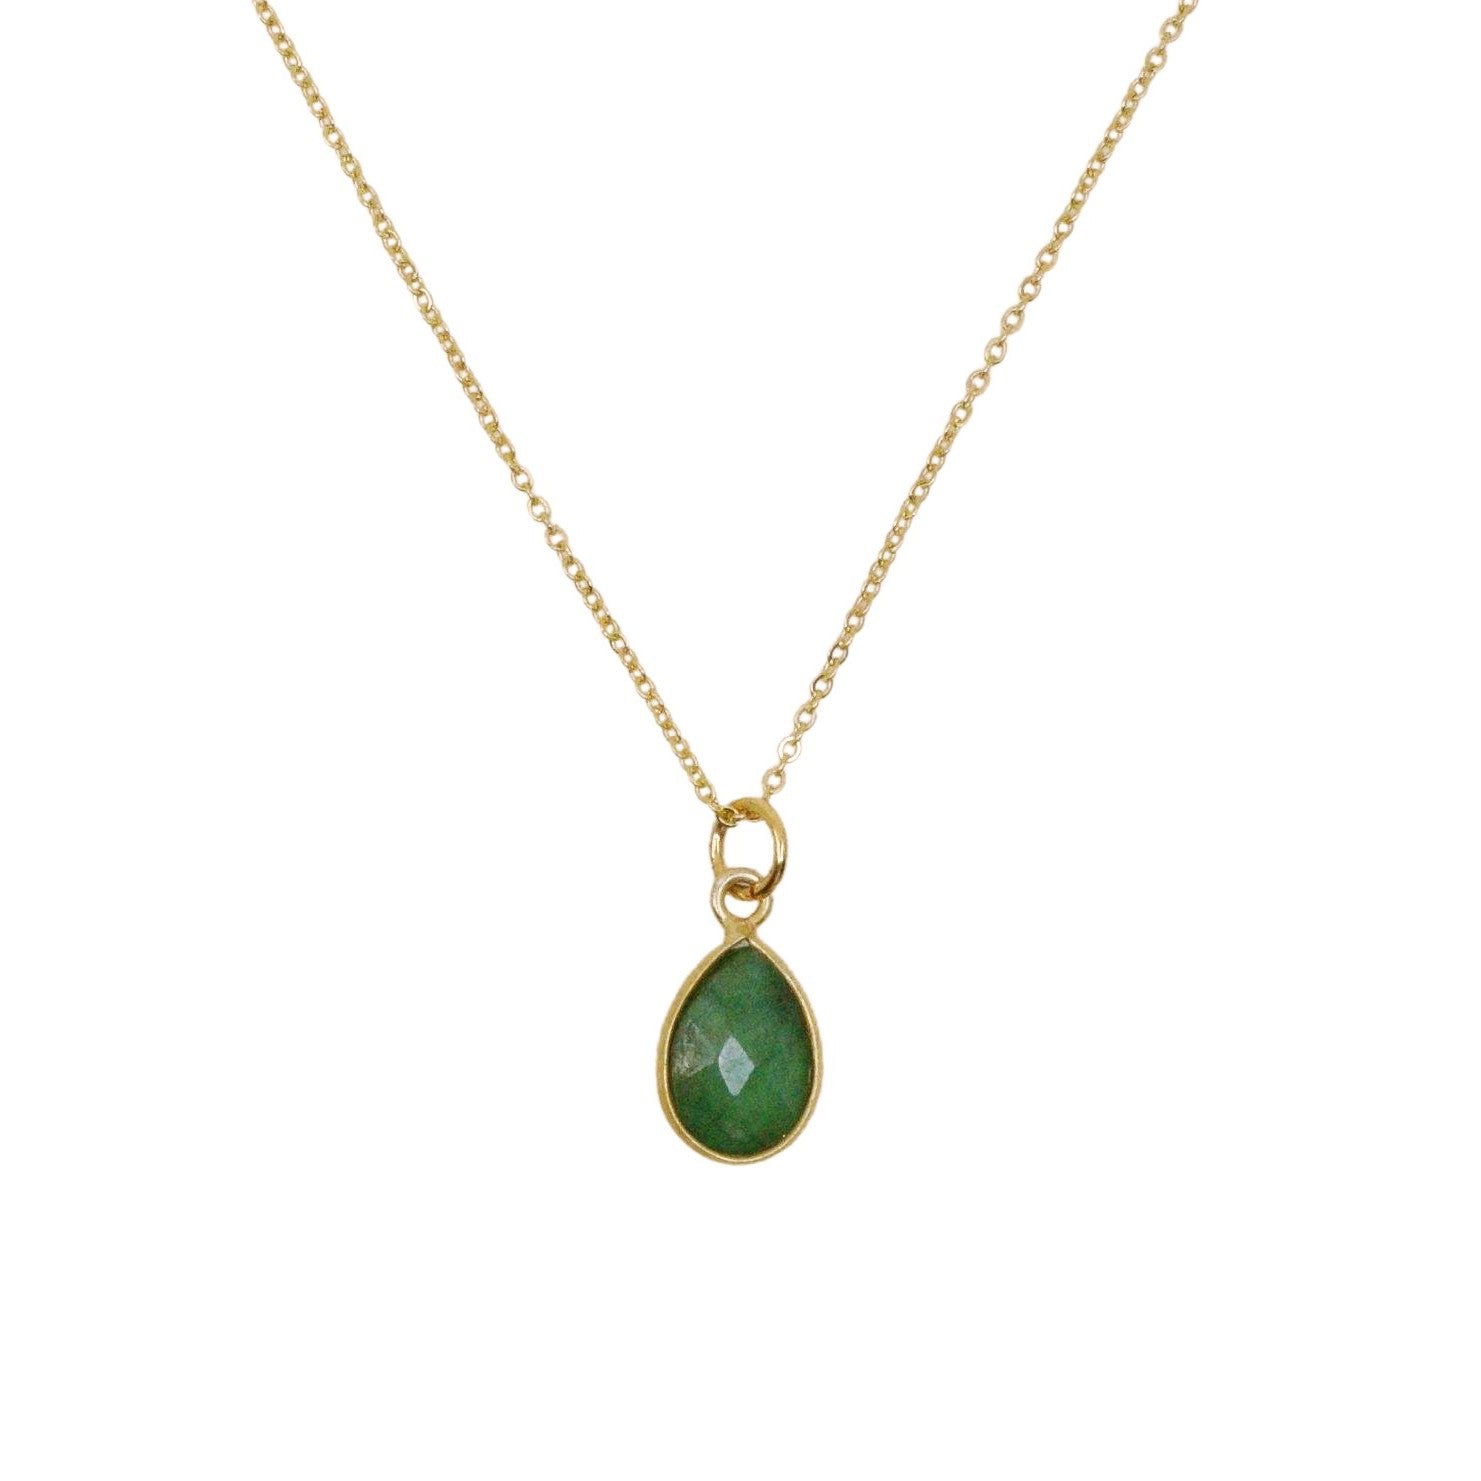 The Emerald Teardrop Necklace